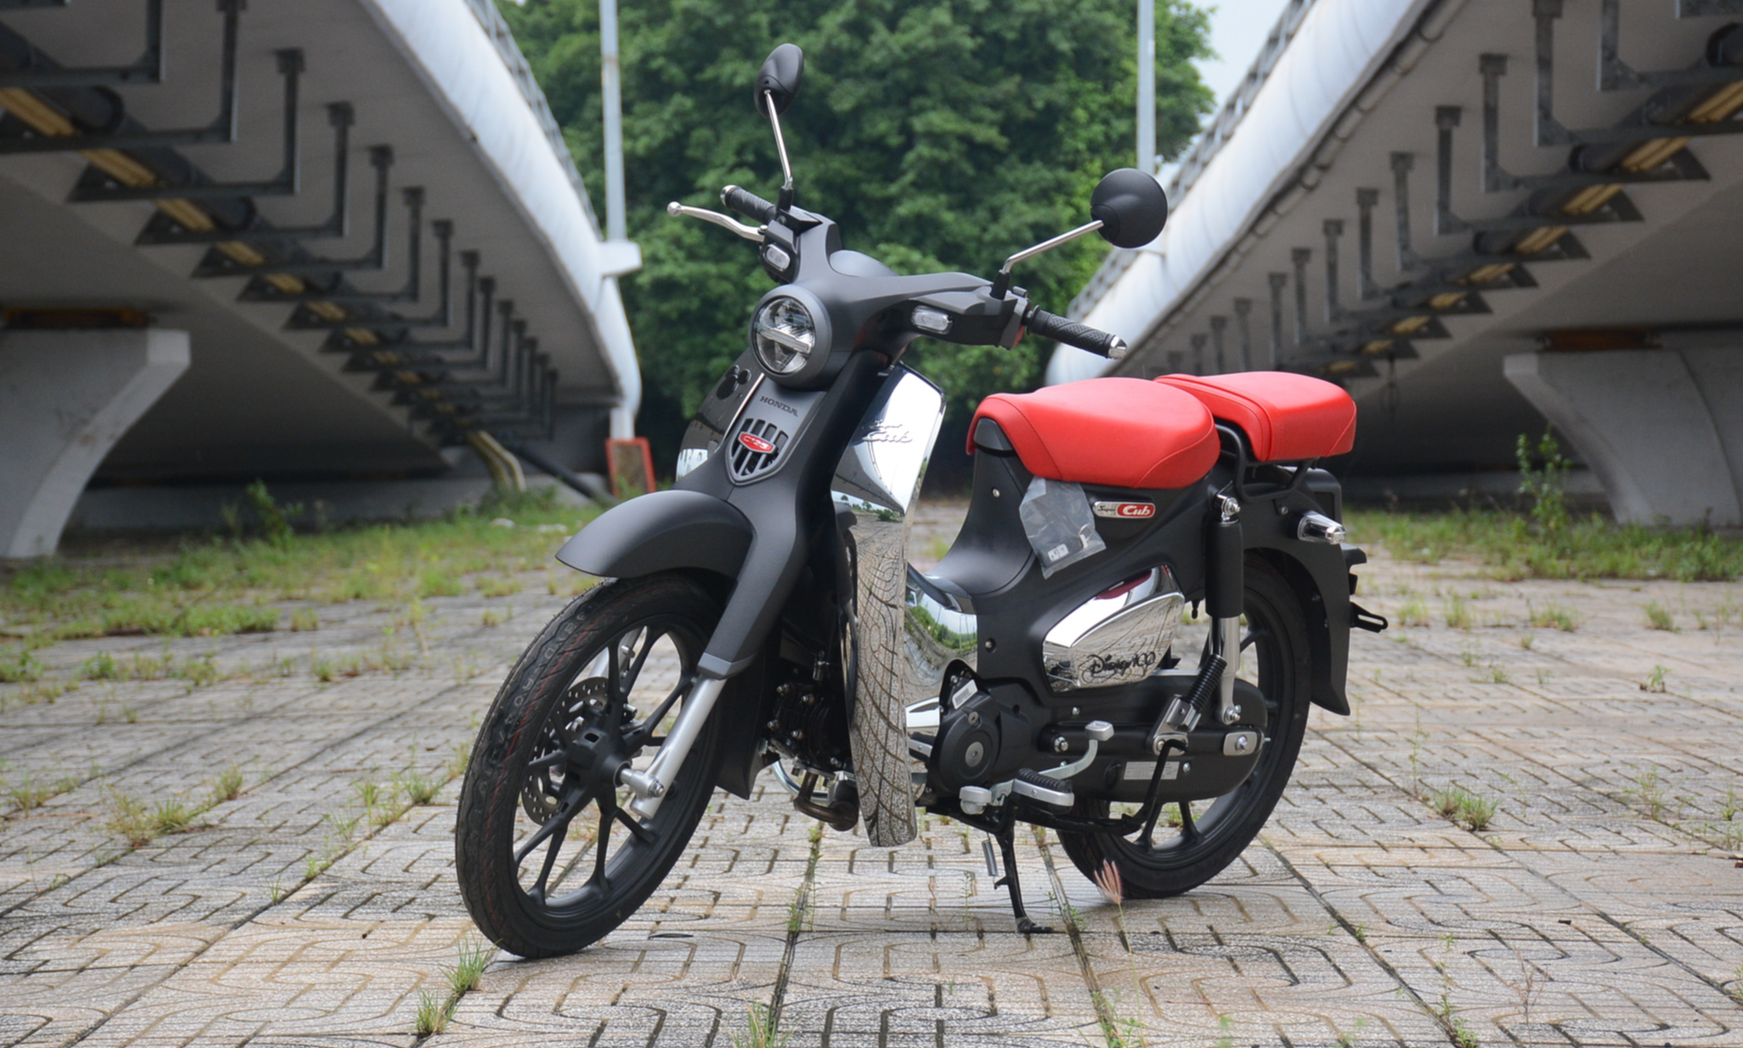 4 mẫu xe máy Honda nhập khẩu về Việt Nam giá bán cả trăm triệu đồng - Ảnh 1.